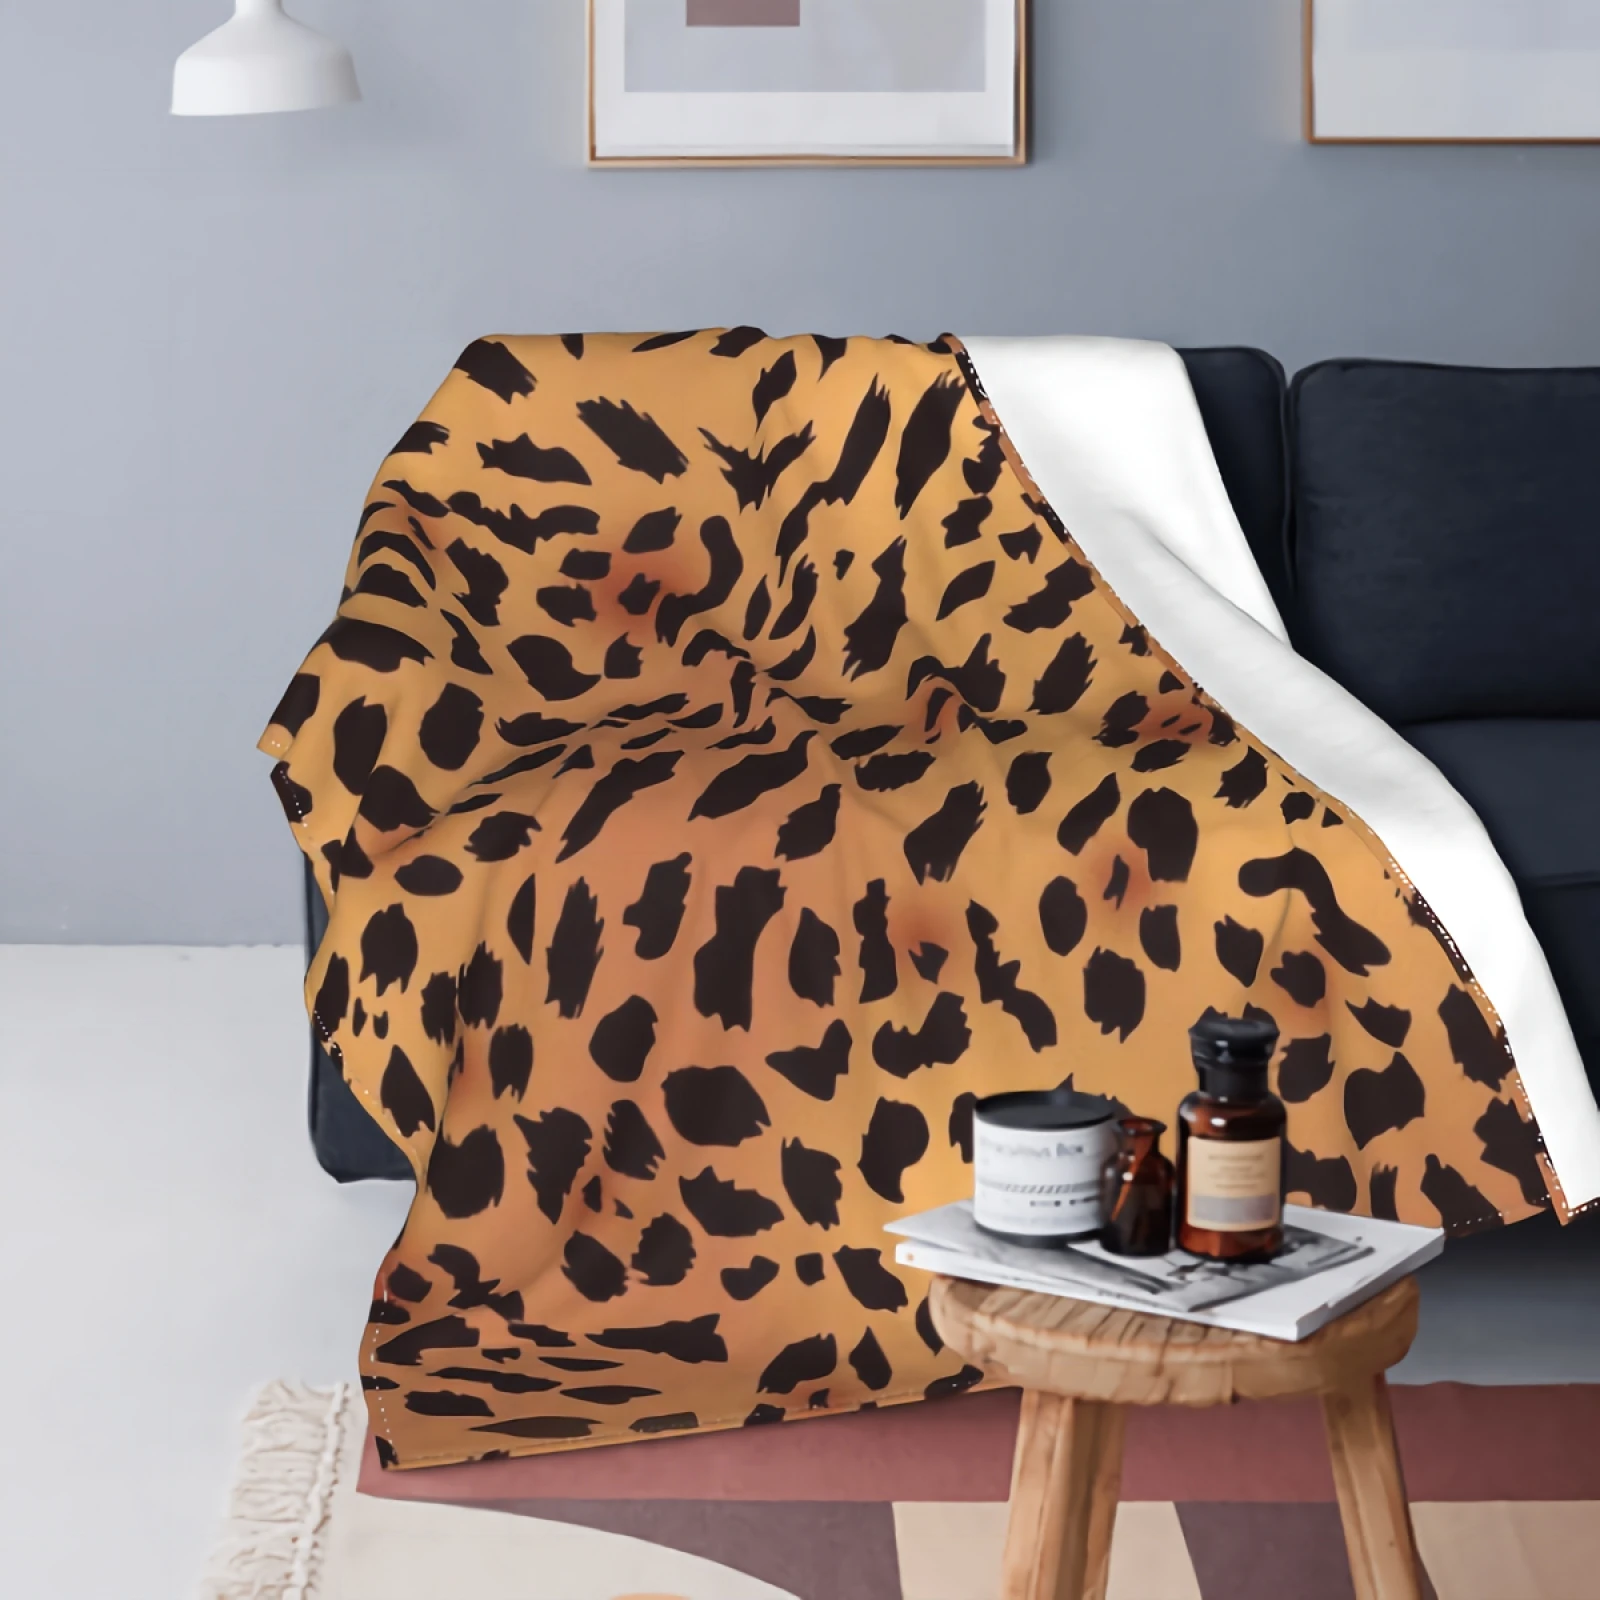 

Флисовое одеяло с леопардовым принтом Anyako, супермягкое уютное роскошное покрывало для кровати размером 50x40 дюймов